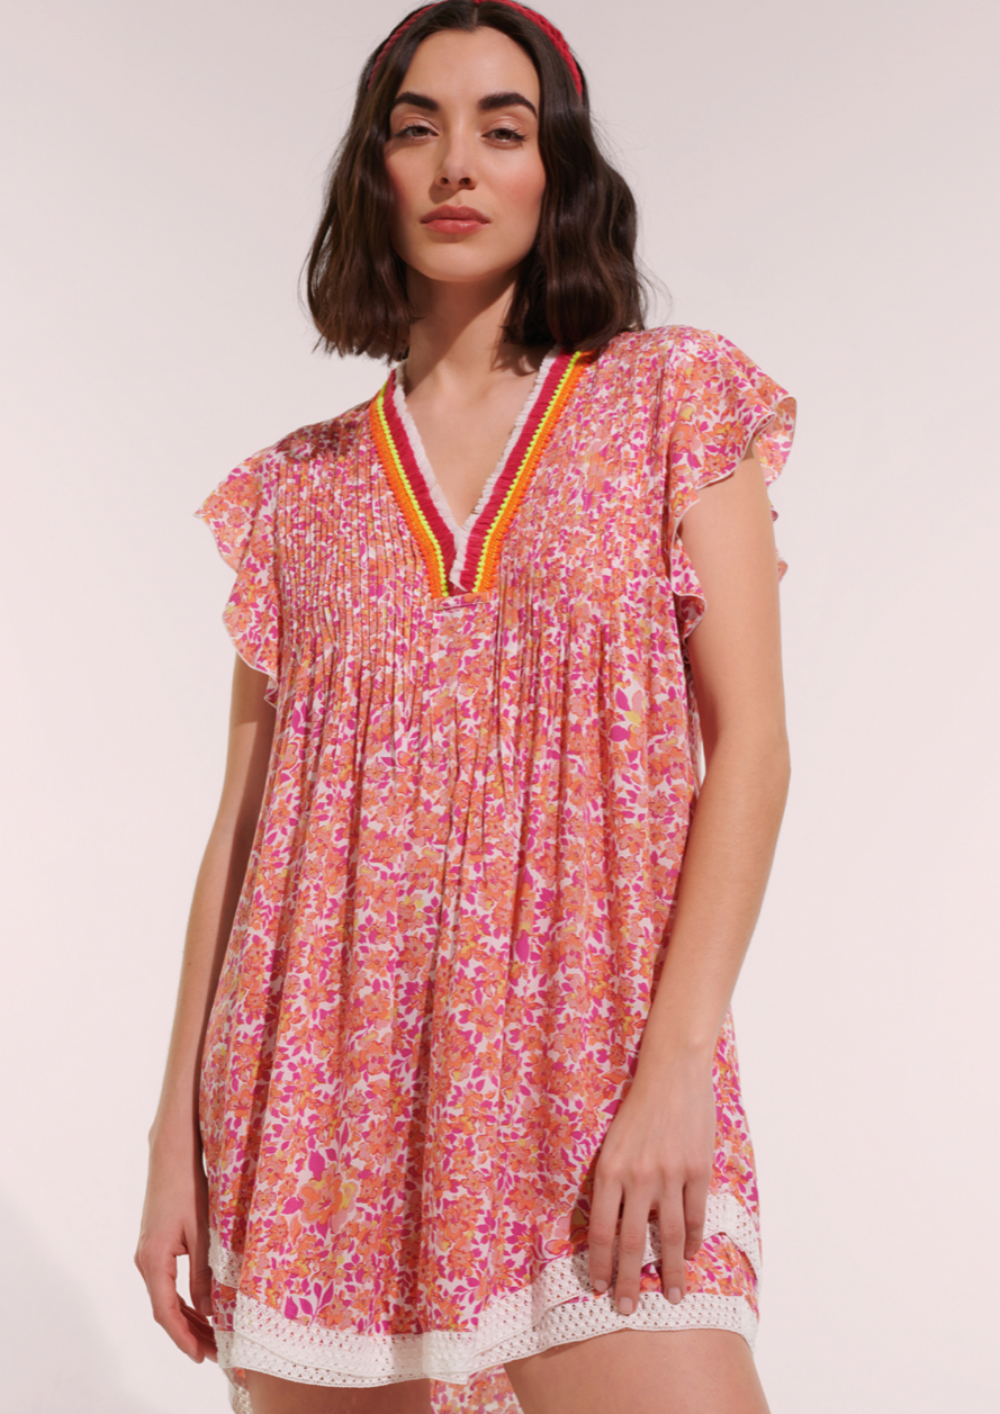 Poupette St Barths Mini Dress Sasha Lace Trimmed |Pink Net